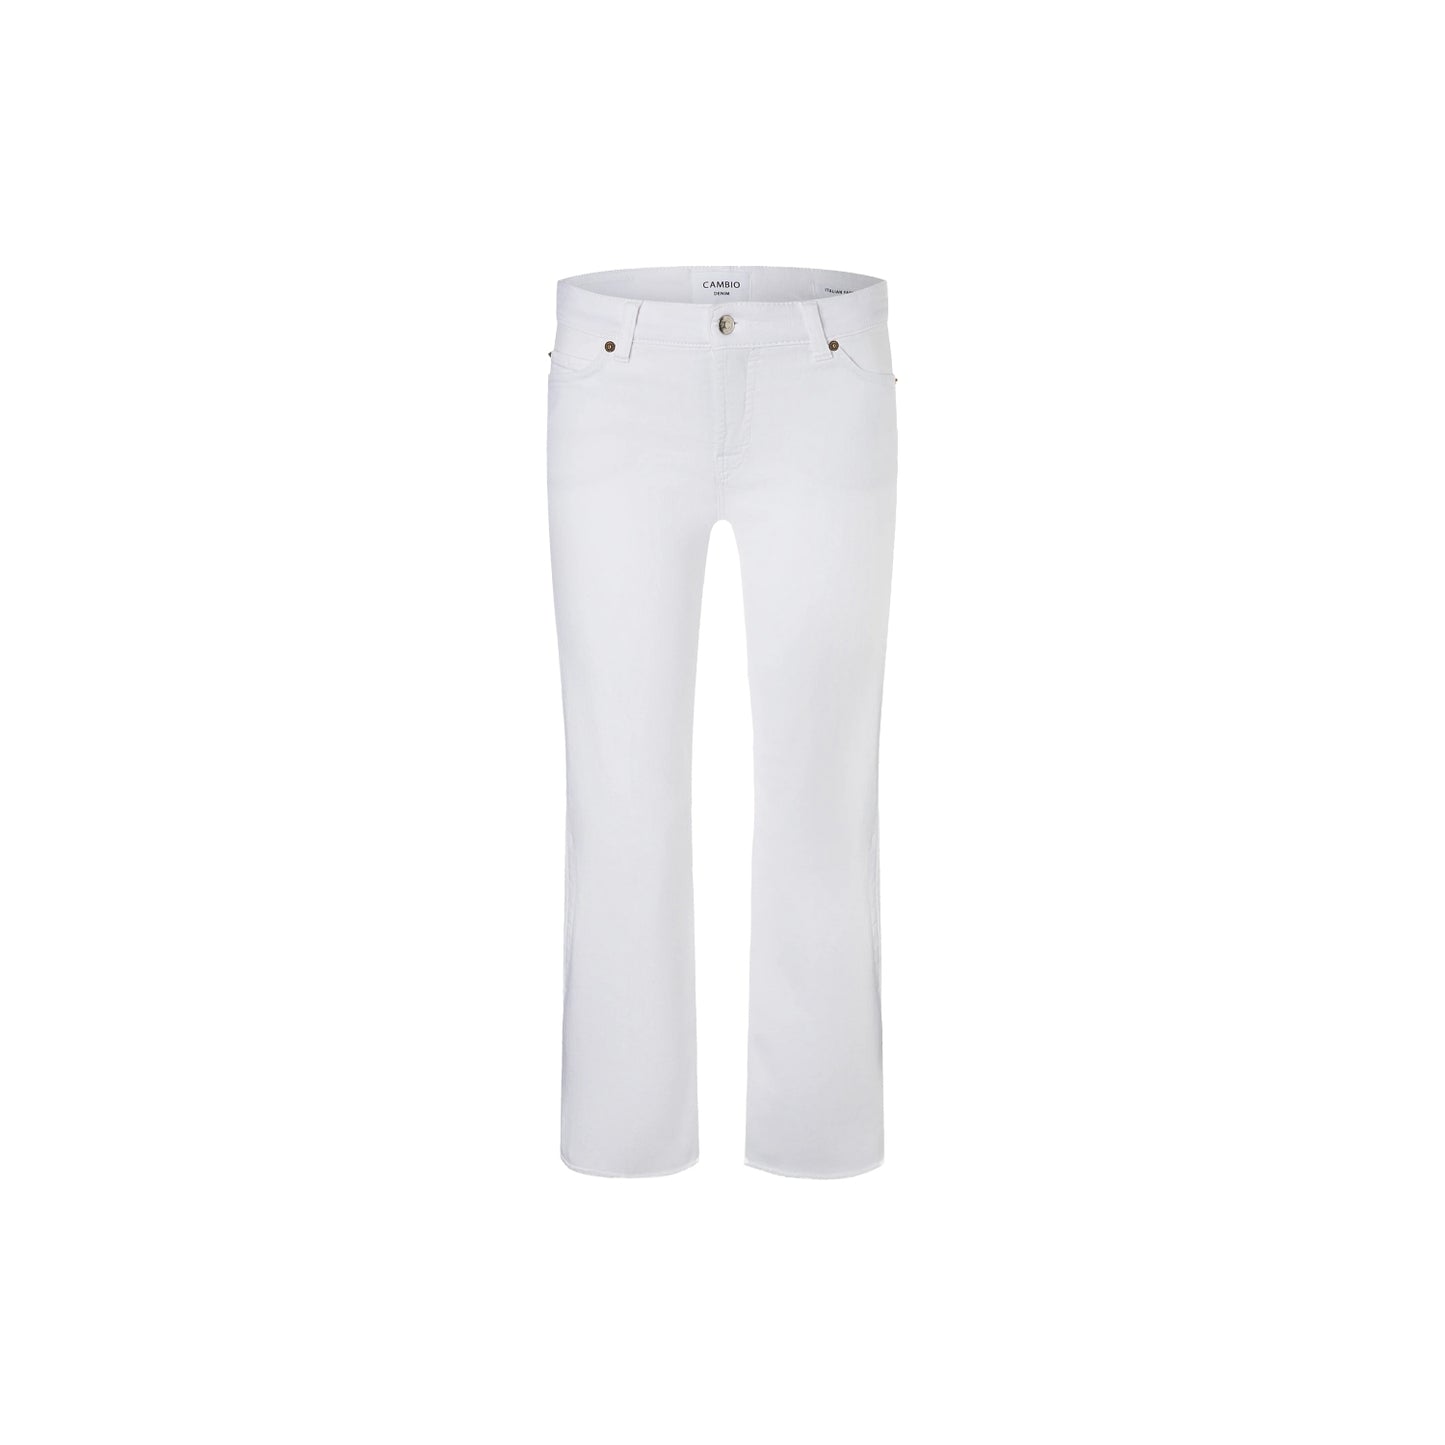 Cambio Jeans Francesca in weiß. Modische flared Jeans in weichen Sommer Denim von Cambio online kaufen. 5-Pocket Hose mit 7/8 Länge und offenkantigem Saum aus der neuen Cambio Kollektion.